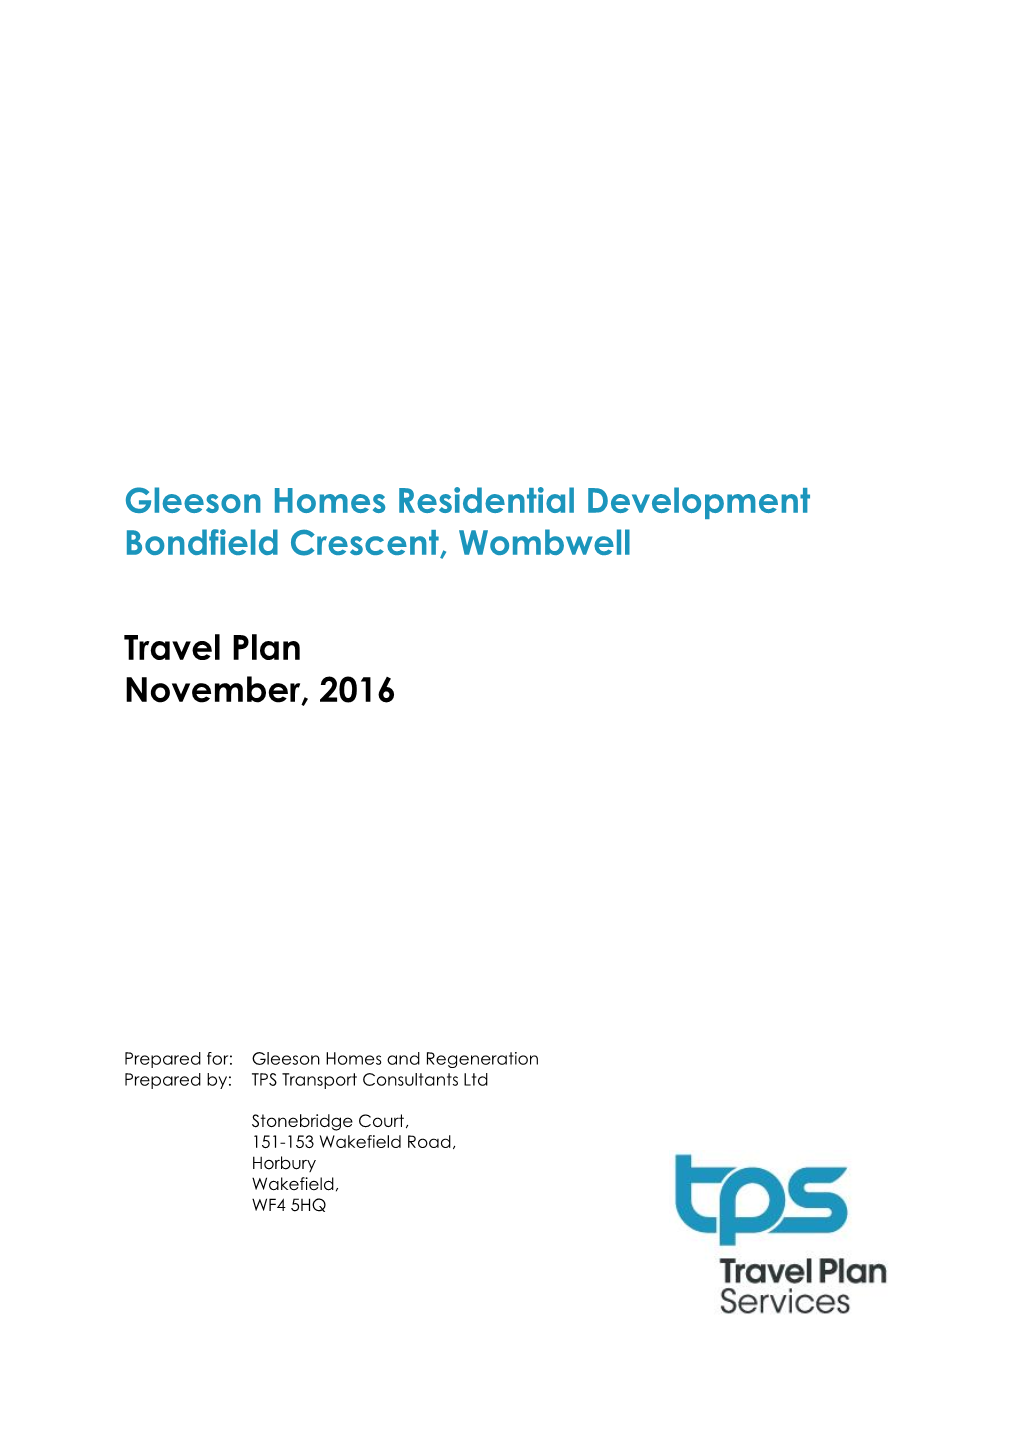 Gleeson Homes Residential Development Bondfield Crescent, Wombwell Travel Plan November, 2016